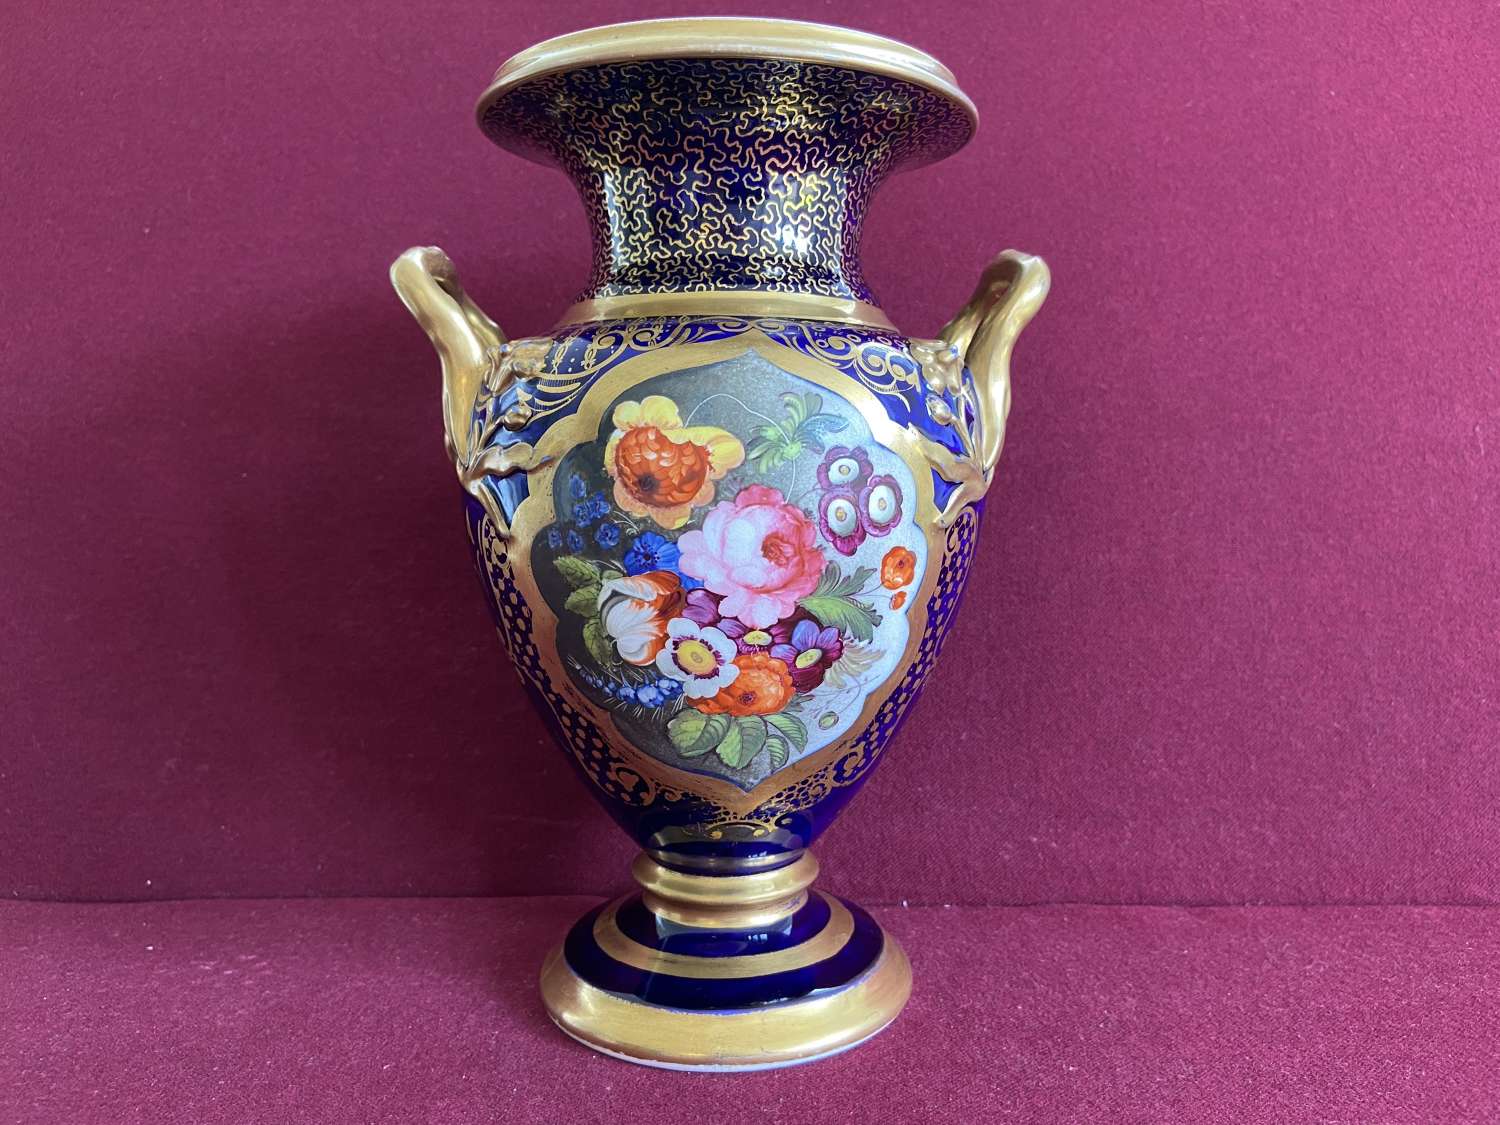 A fine English porcelain vase c.1825